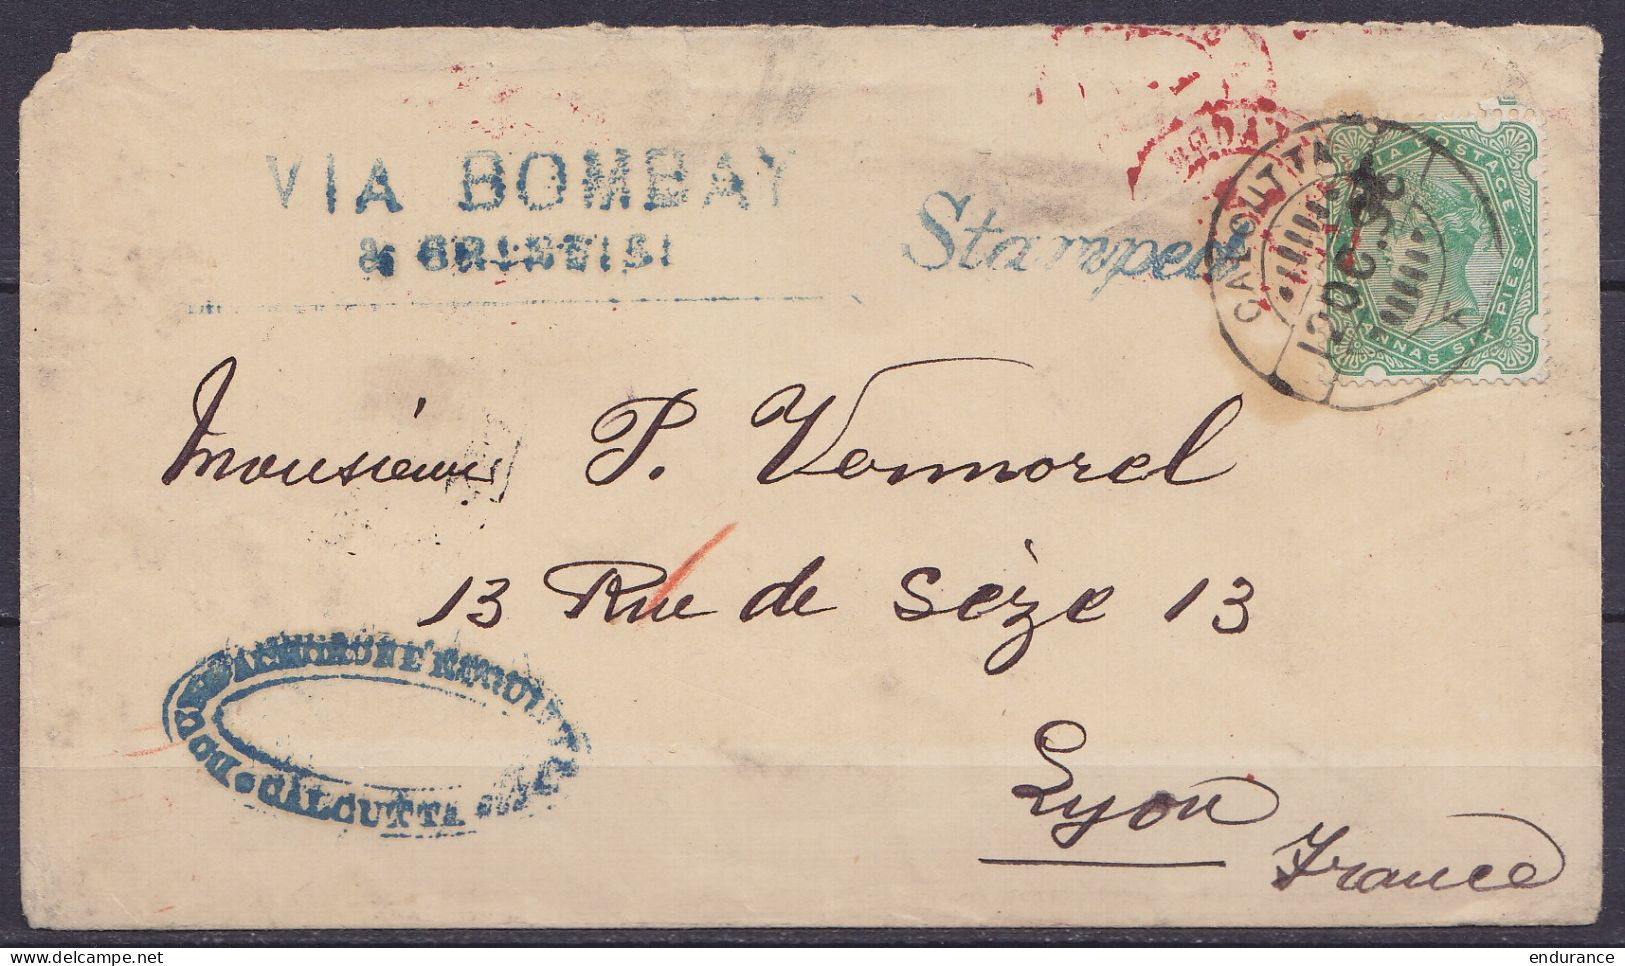 Inde - Env. Affr. 2a6p Càpt CALCUTTA /12 OC 1896 Pour LYON France - Griffes "VIA BOMBAY & BRINDISI" & "Stamped" (au Dos: - 1882-1901 Empire